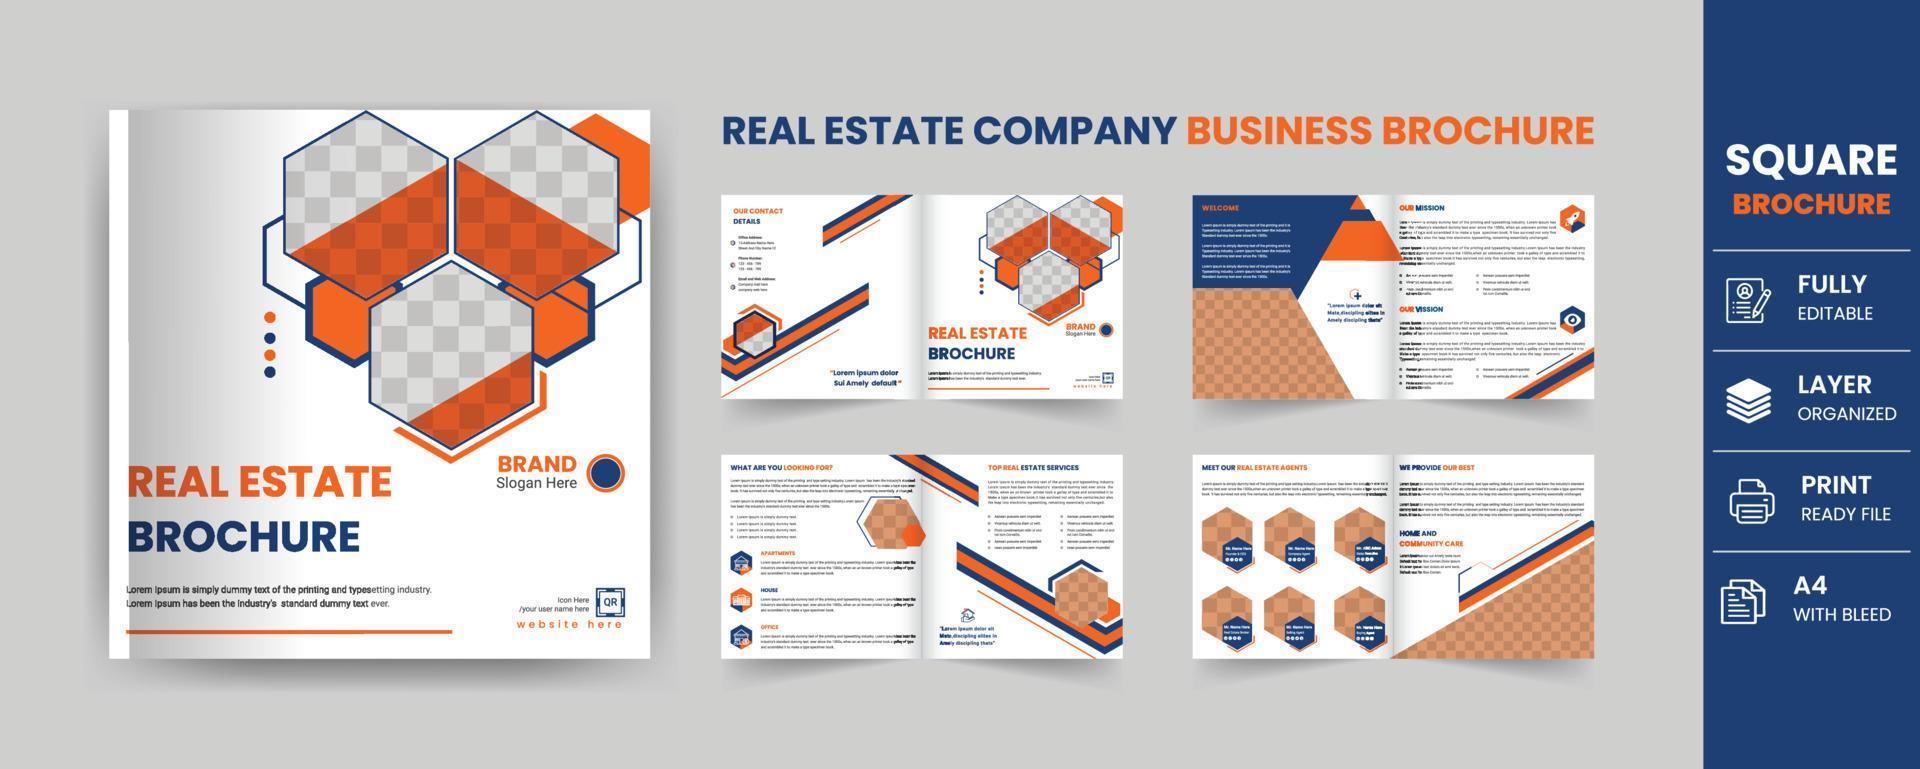 Corporate Real Estate Business Square Broschüre Template-Design 8 Seiten vektor